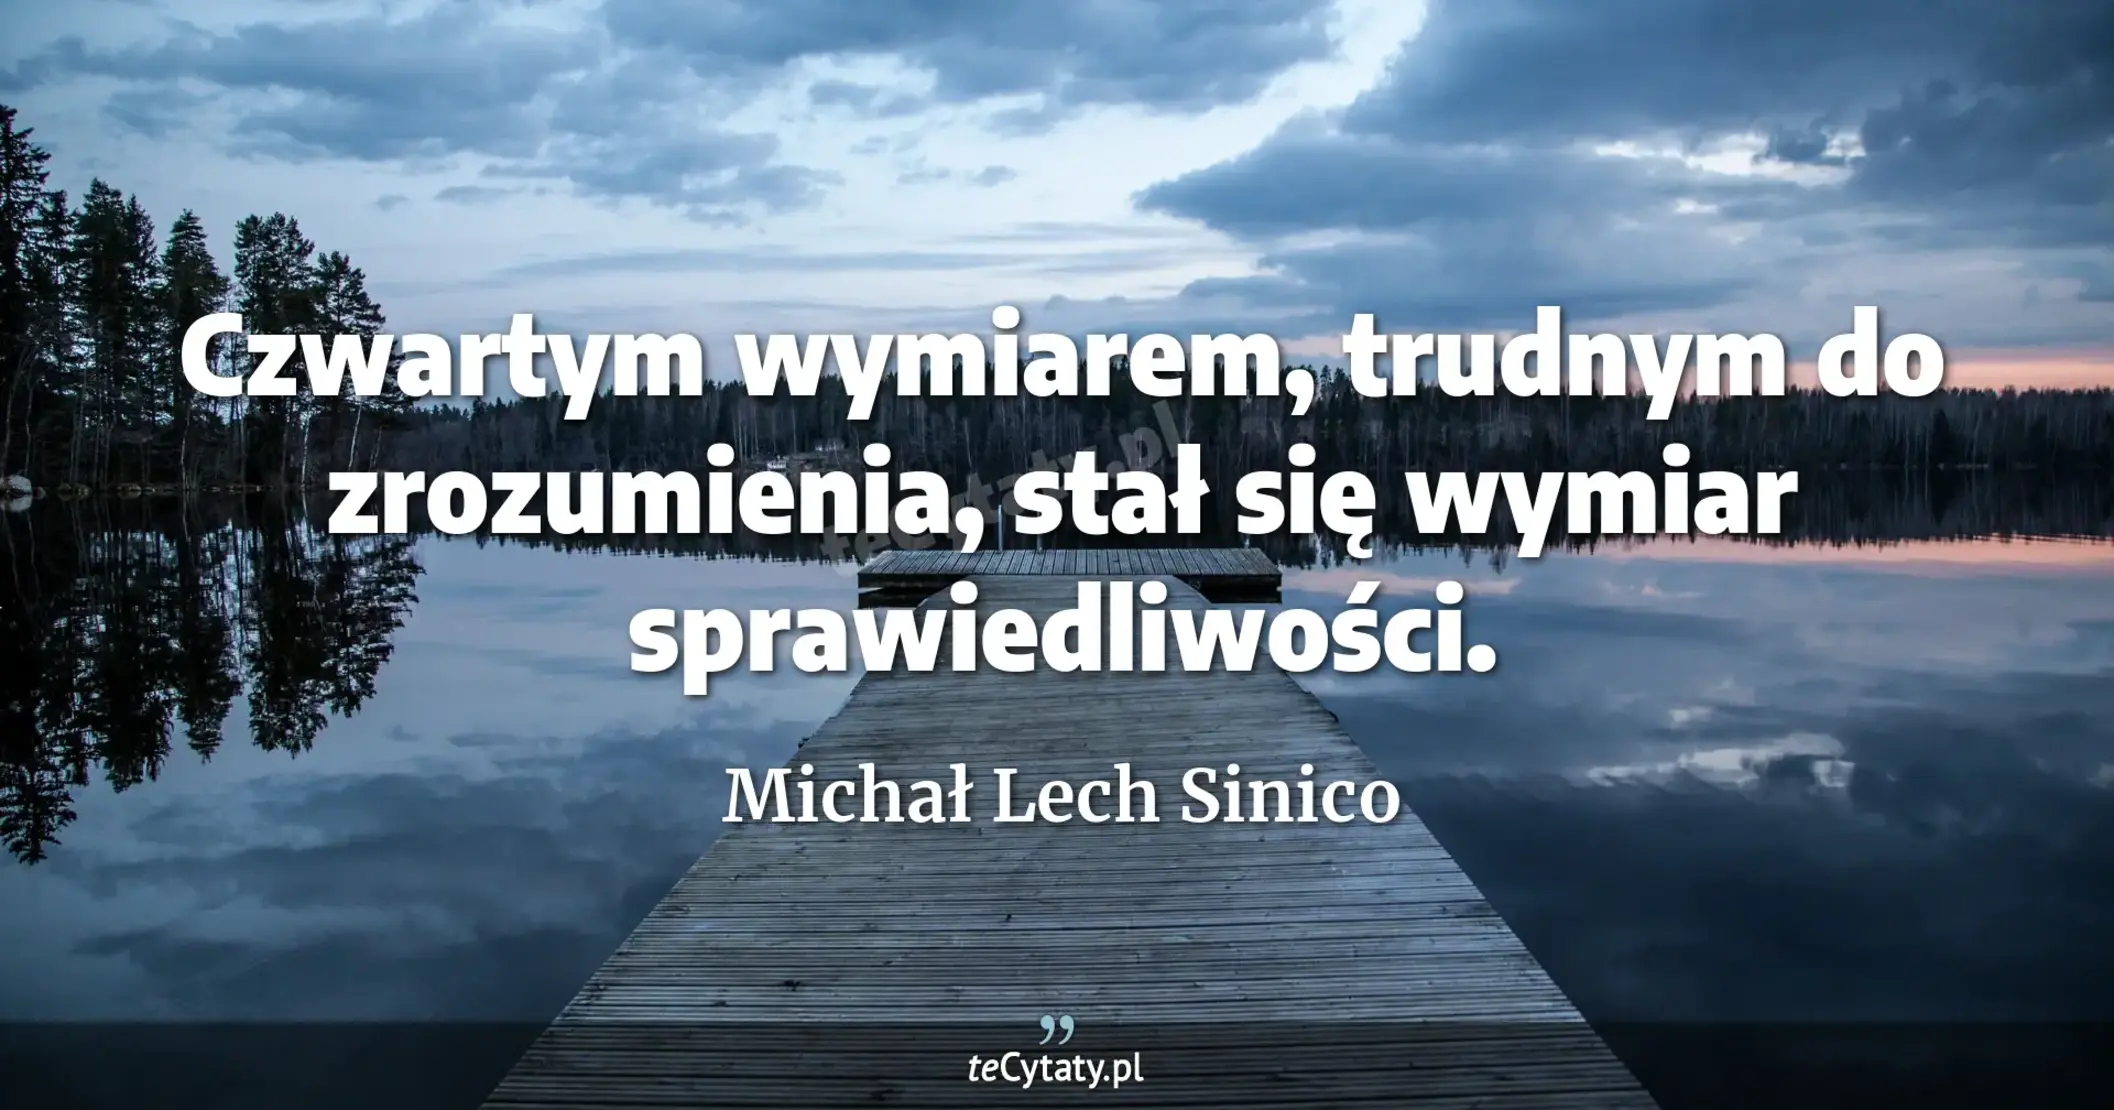 Czwartym wymiarem, trudnym do zrozumienia, stał się wymiar sprawiedliwości. - Michał Lech Sinico